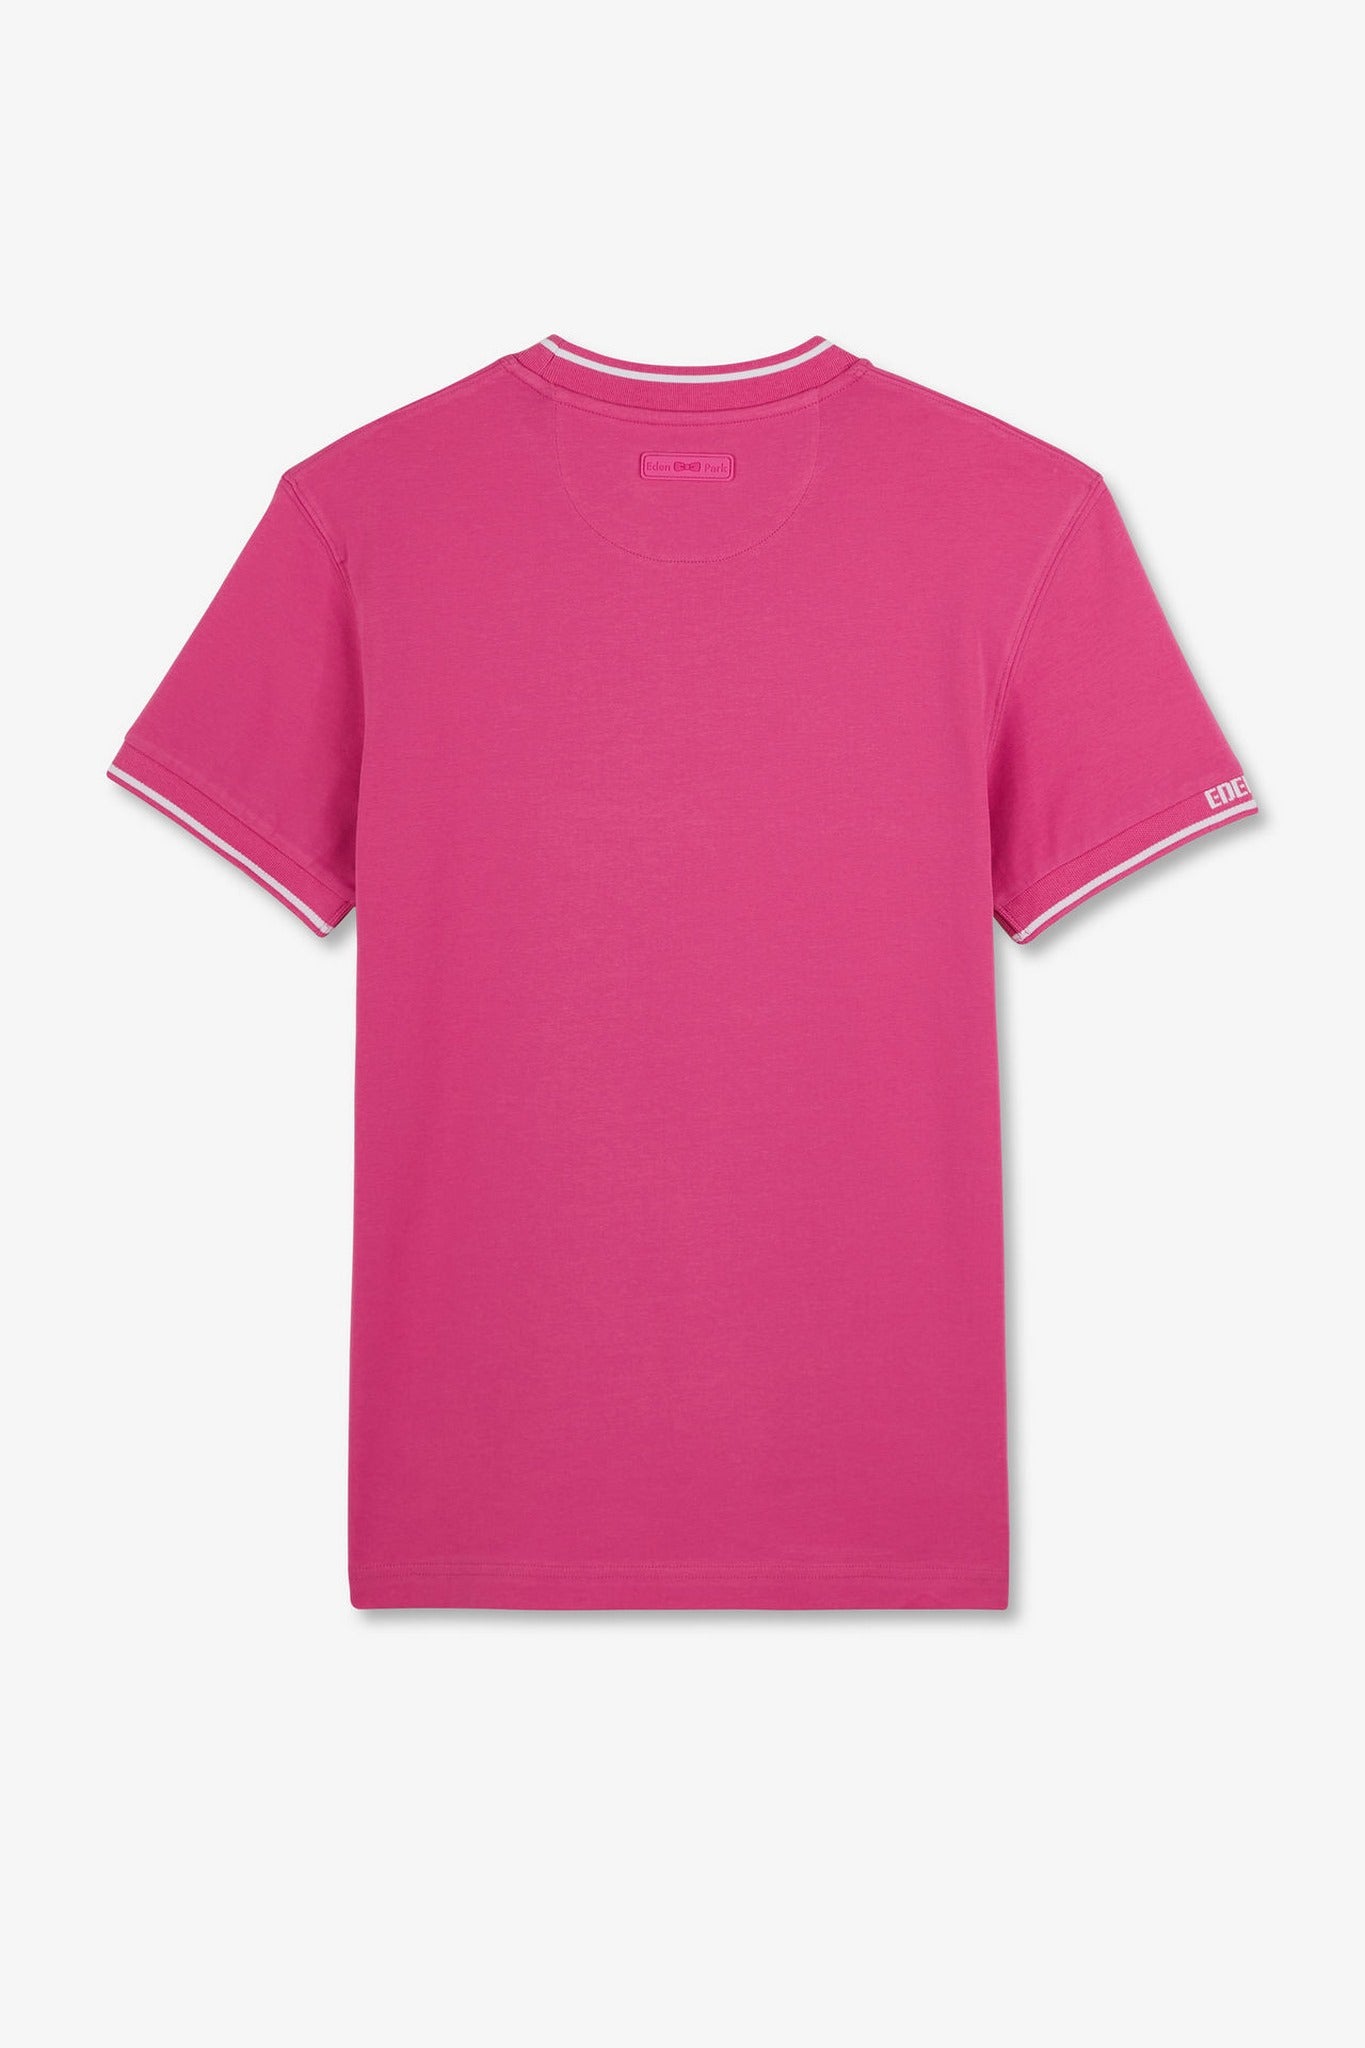 T-shirt rose à manches courtes